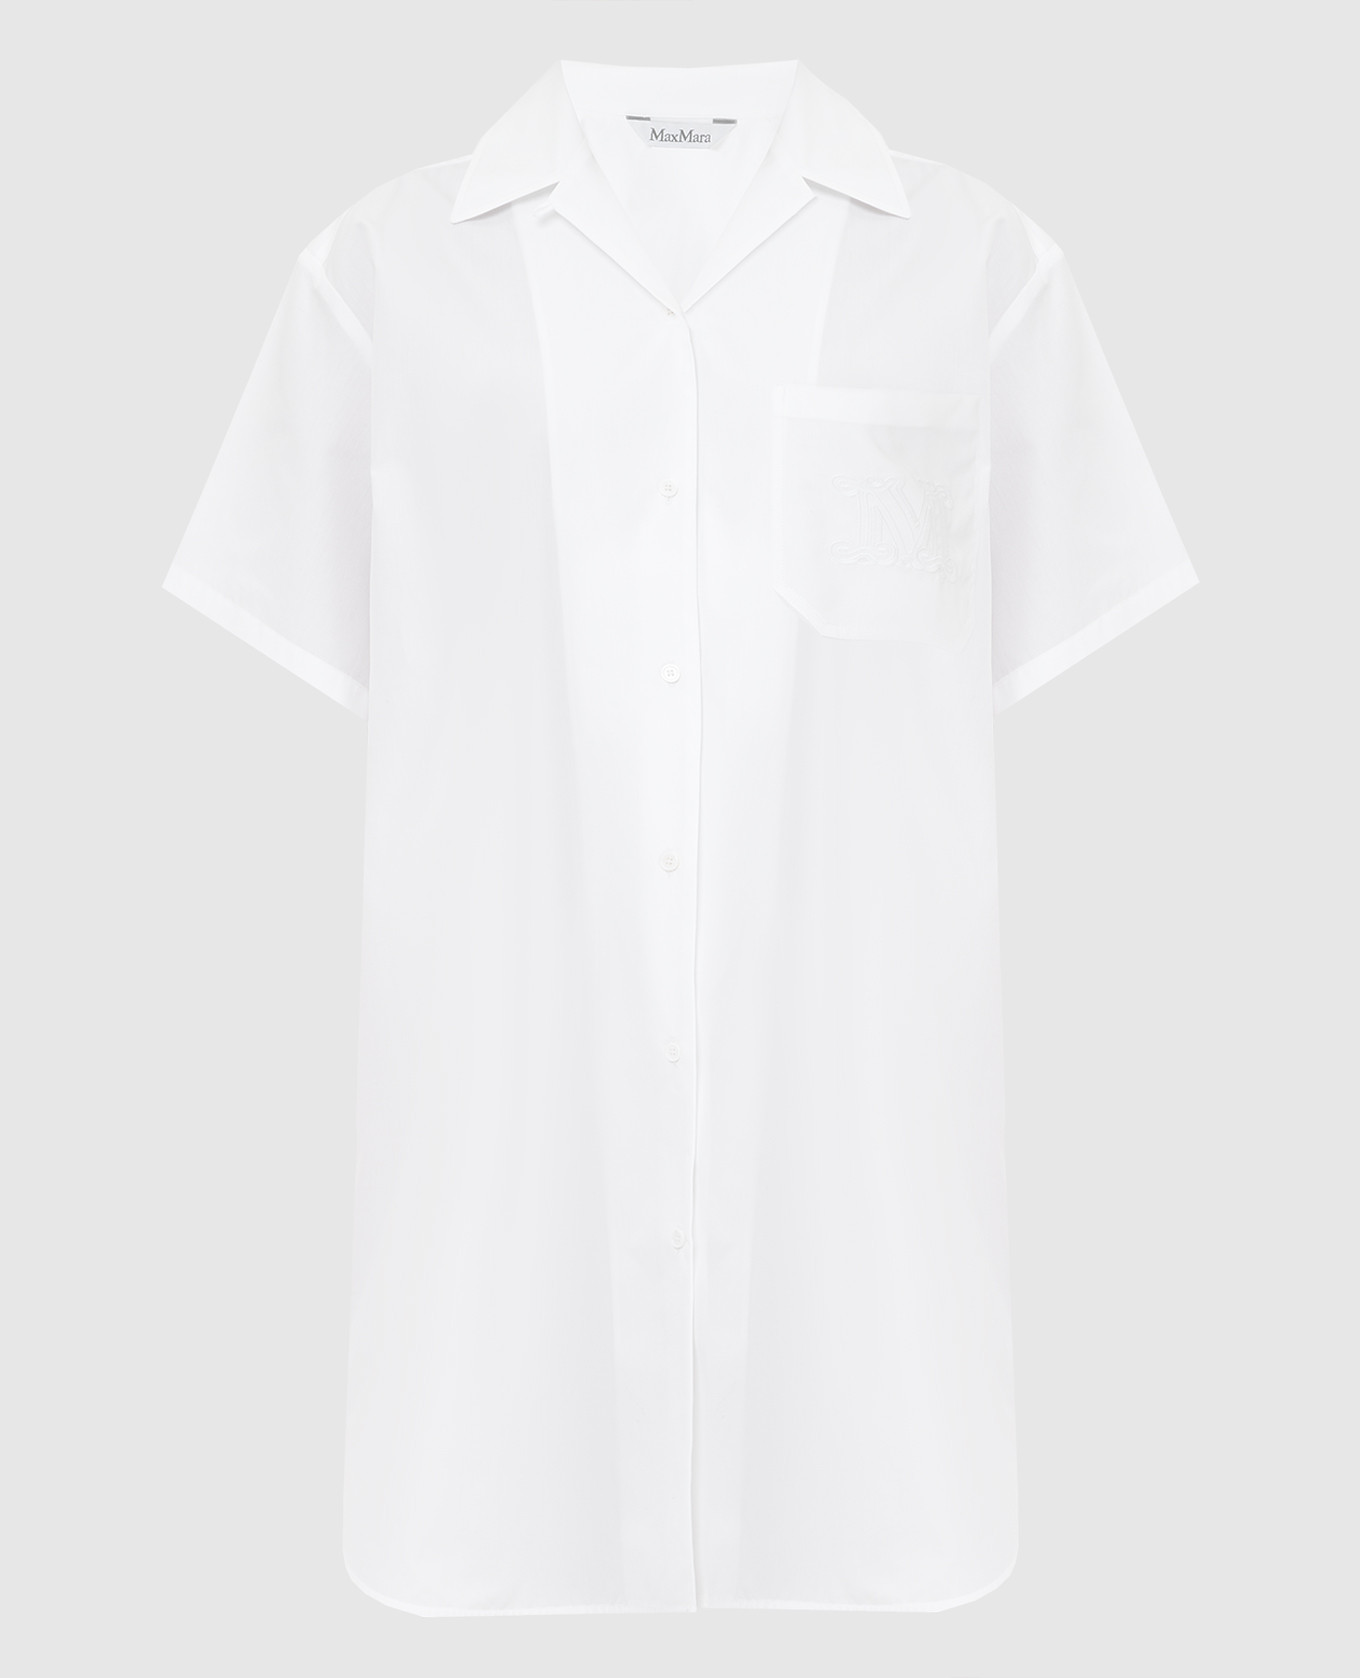 Palau White Shirtdress